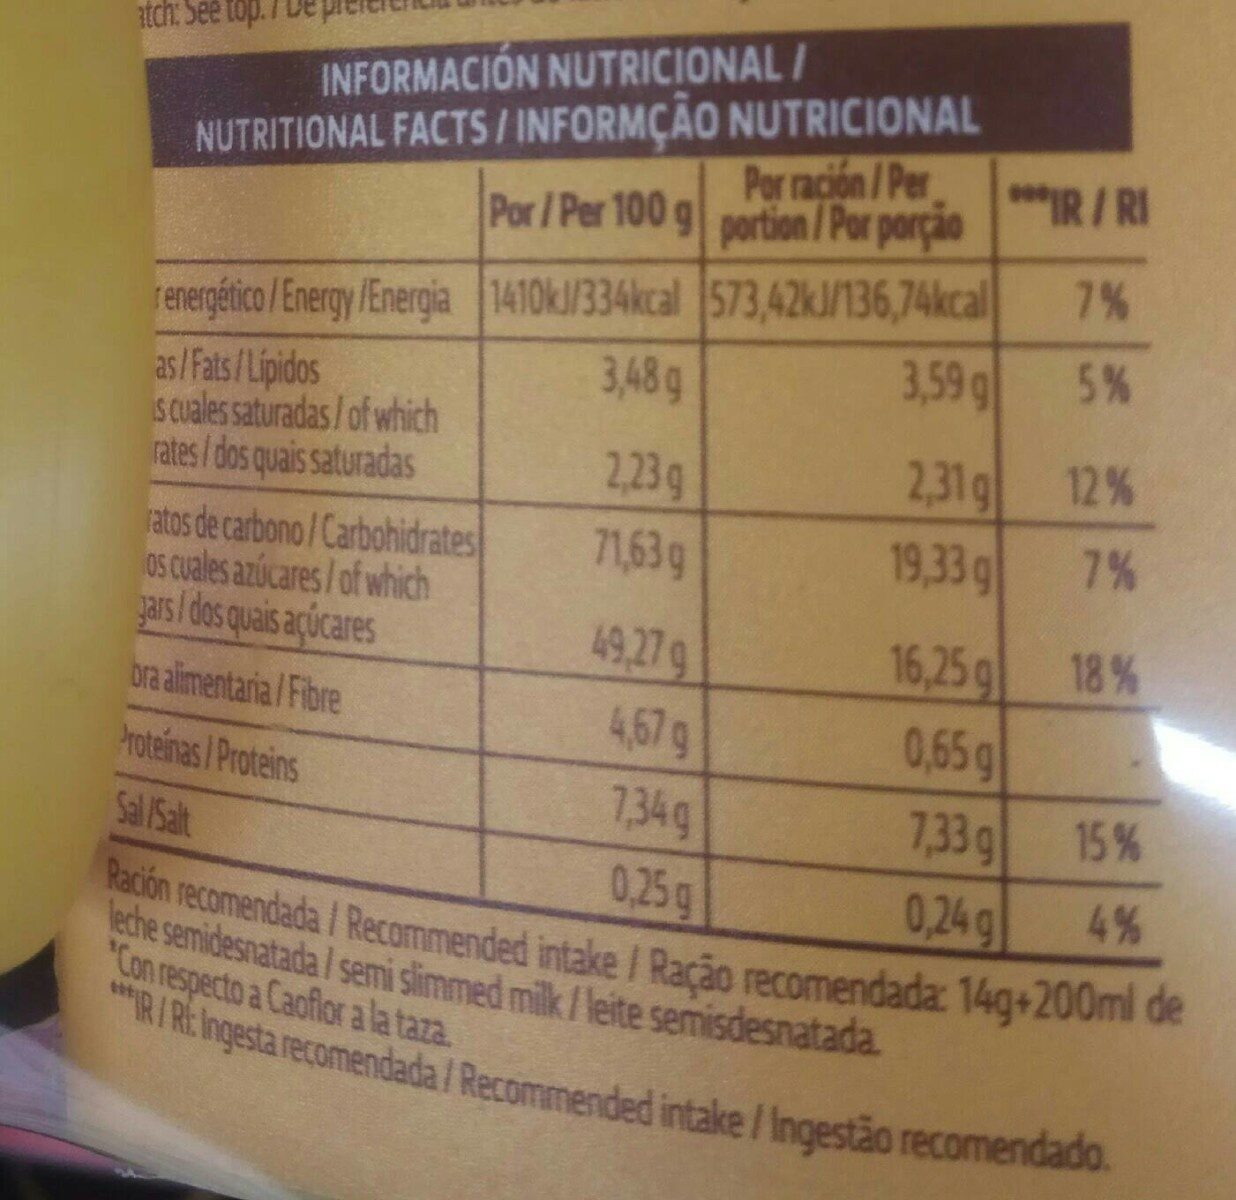 Cacao soluble - Información nutricional